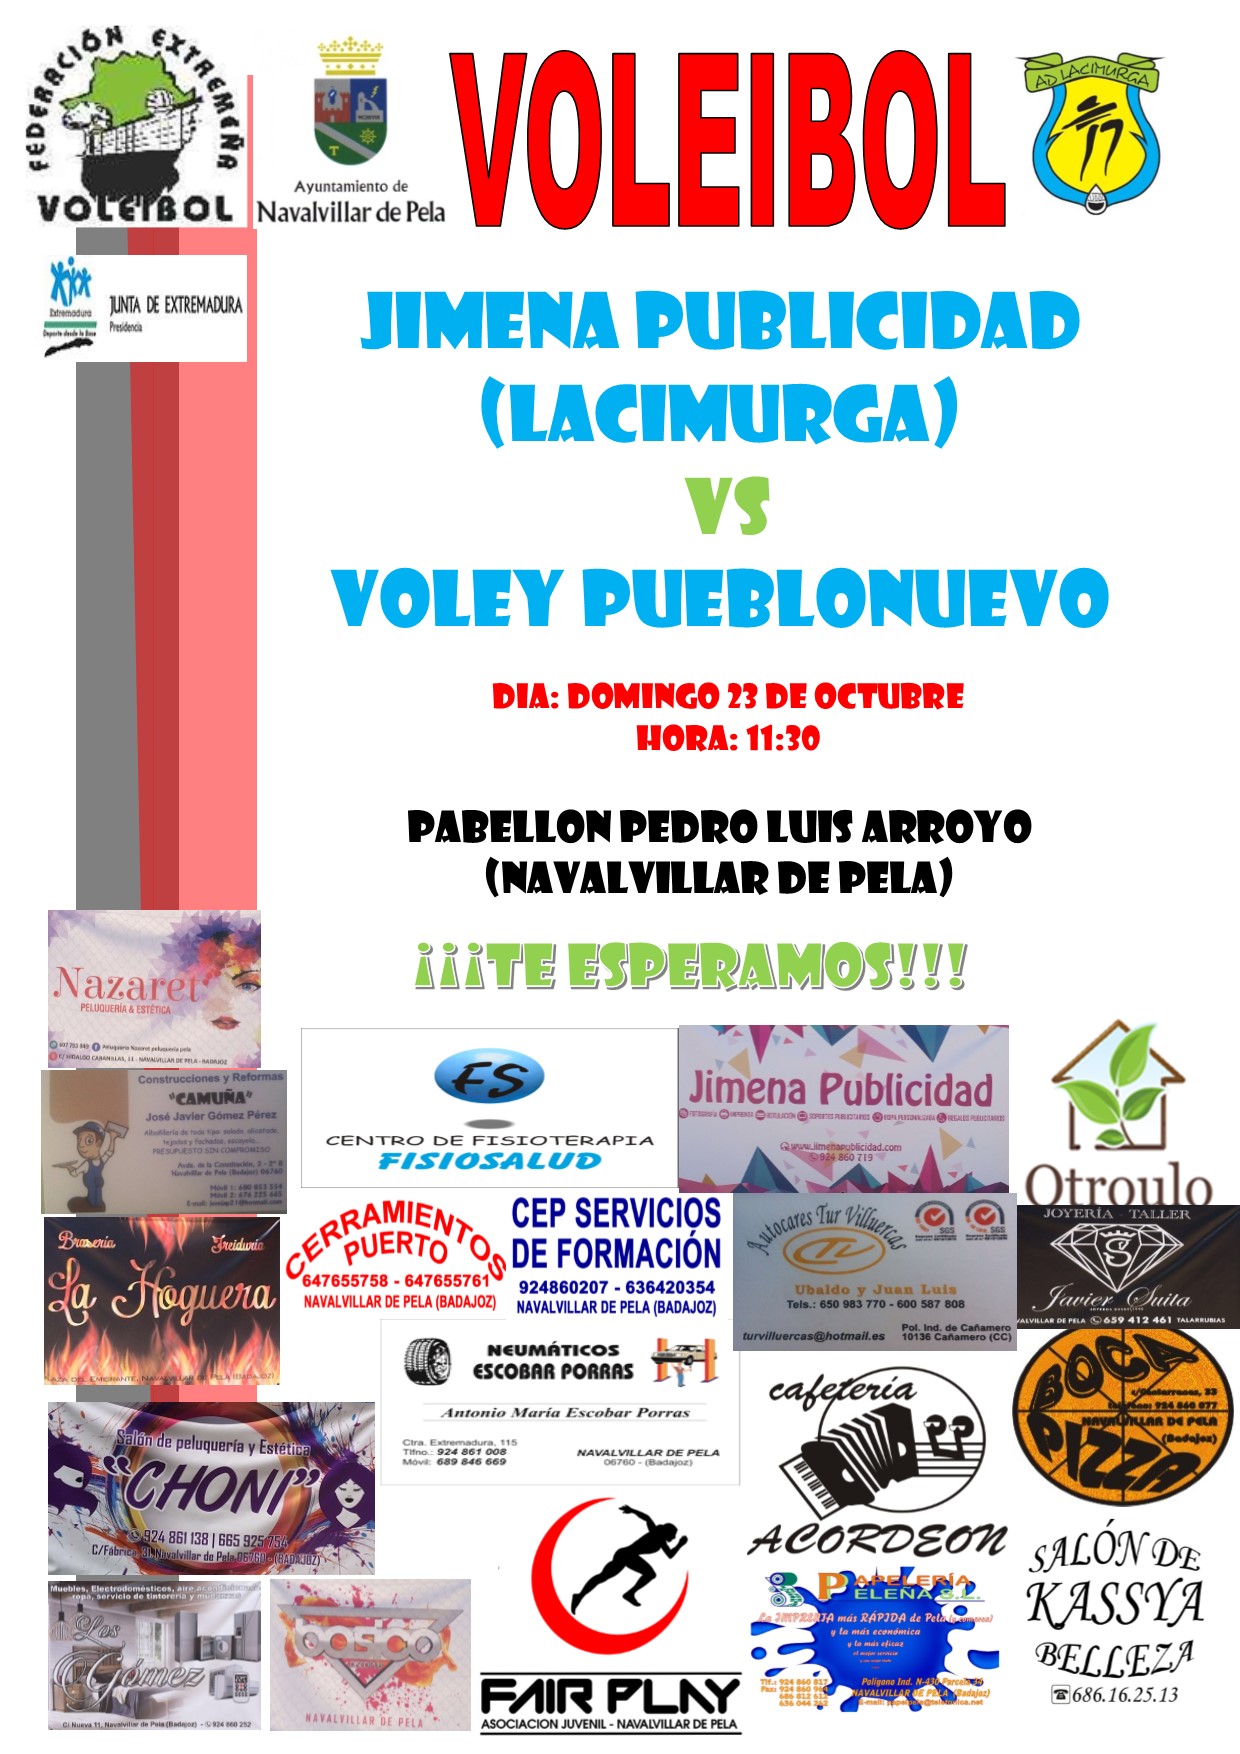 Jimena Publicidad (Lacimurga) - Voley Pueblonuevo